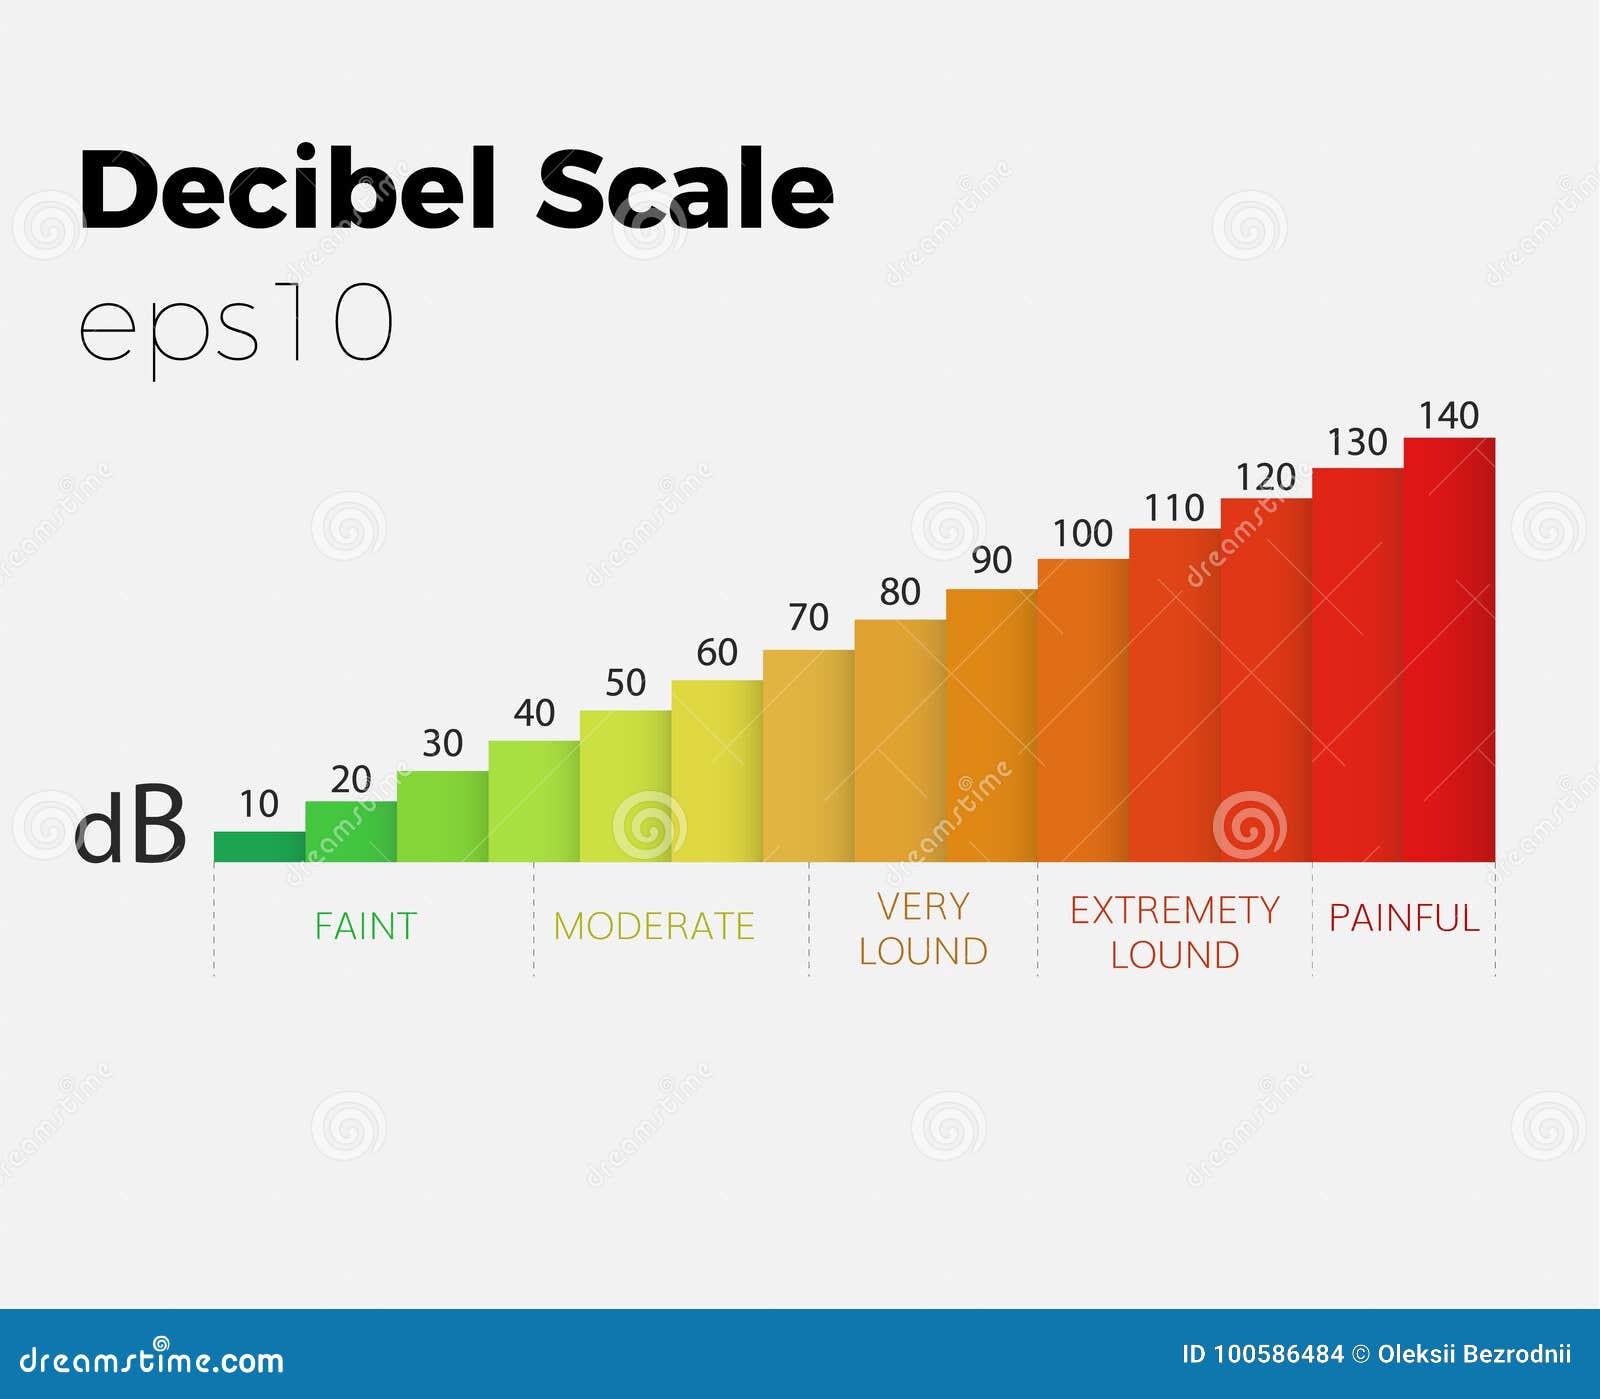 Decibel Rating Chart